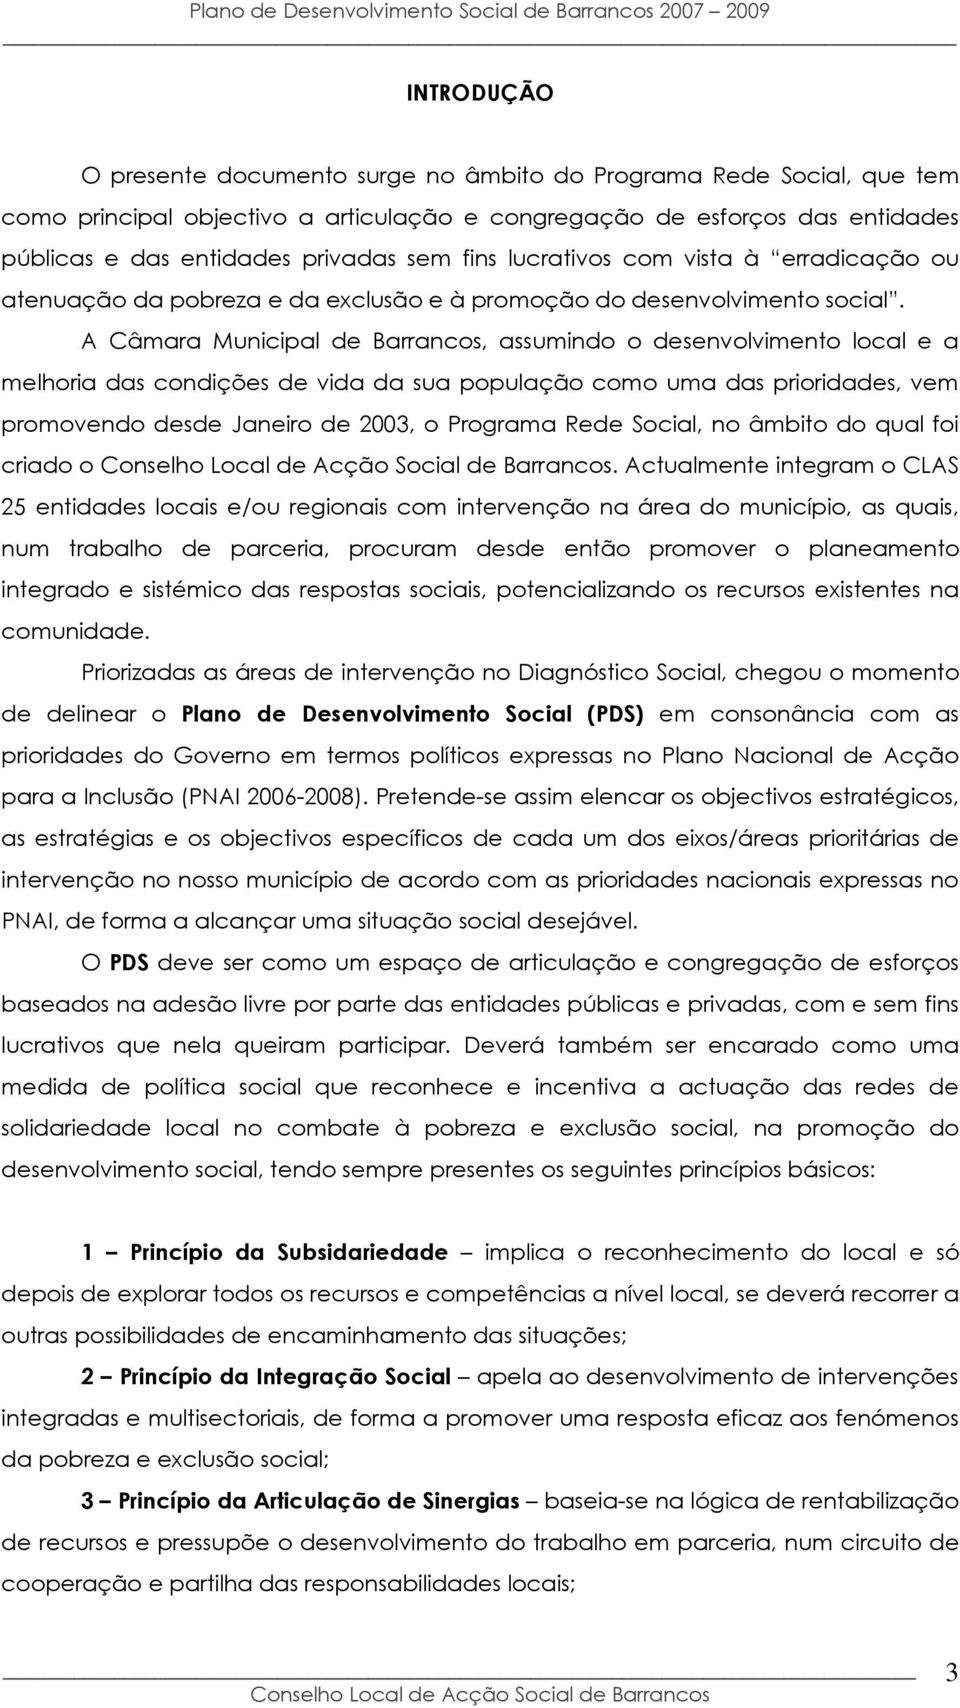 A Câmara Municipal de Barrancos, assumindo o desenvolvimento local e a melhoria das condições de vida da sua população como uma das prioridades, vem promovendo desde Janeiro de 2003, o Programa Rede